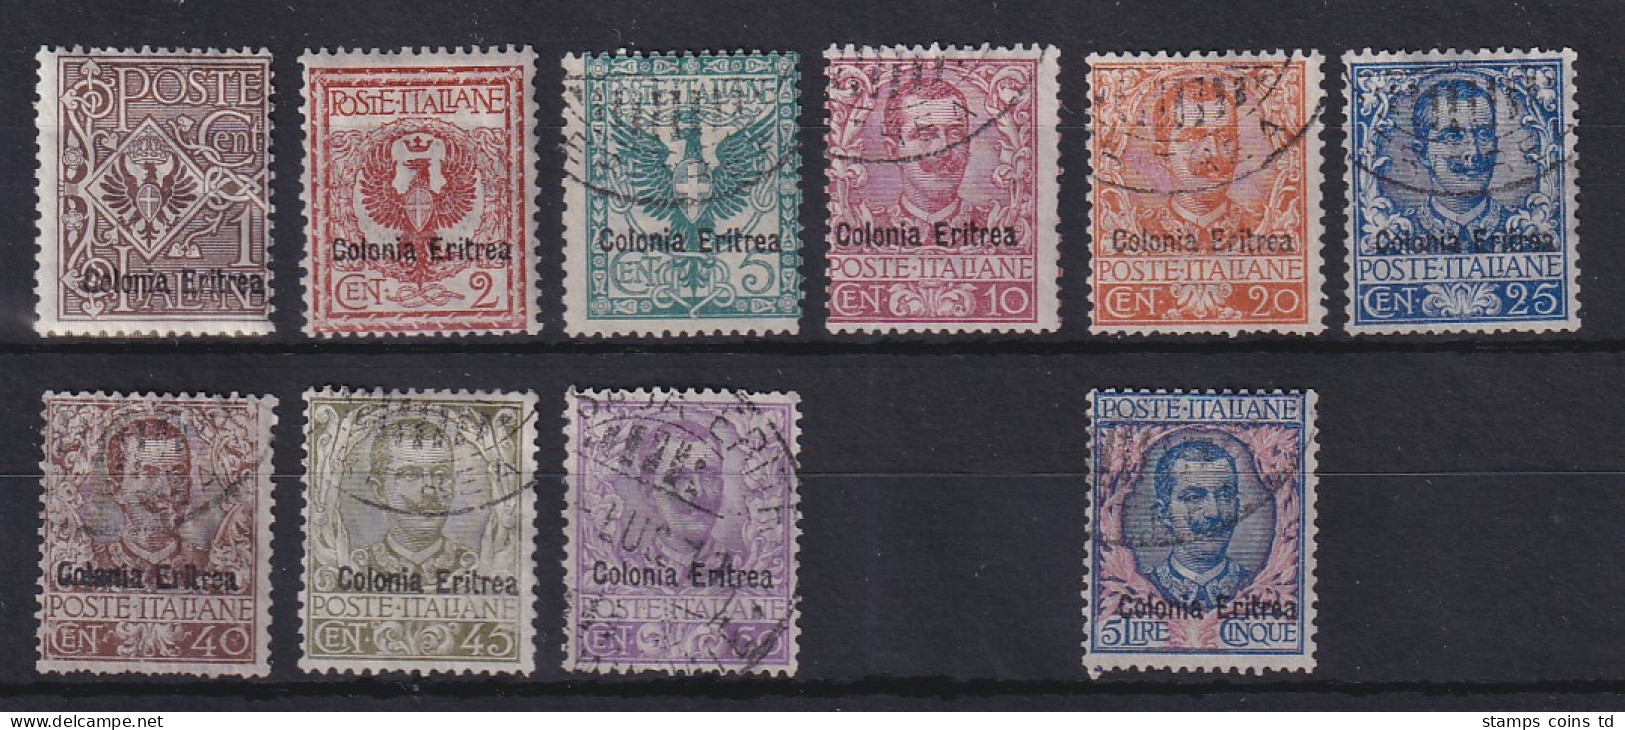 Italienisch-Eritrea 1903 Freimarken Adler / Emanuel III.  Mi.-Nr. 19-29 * / O - Eritrea